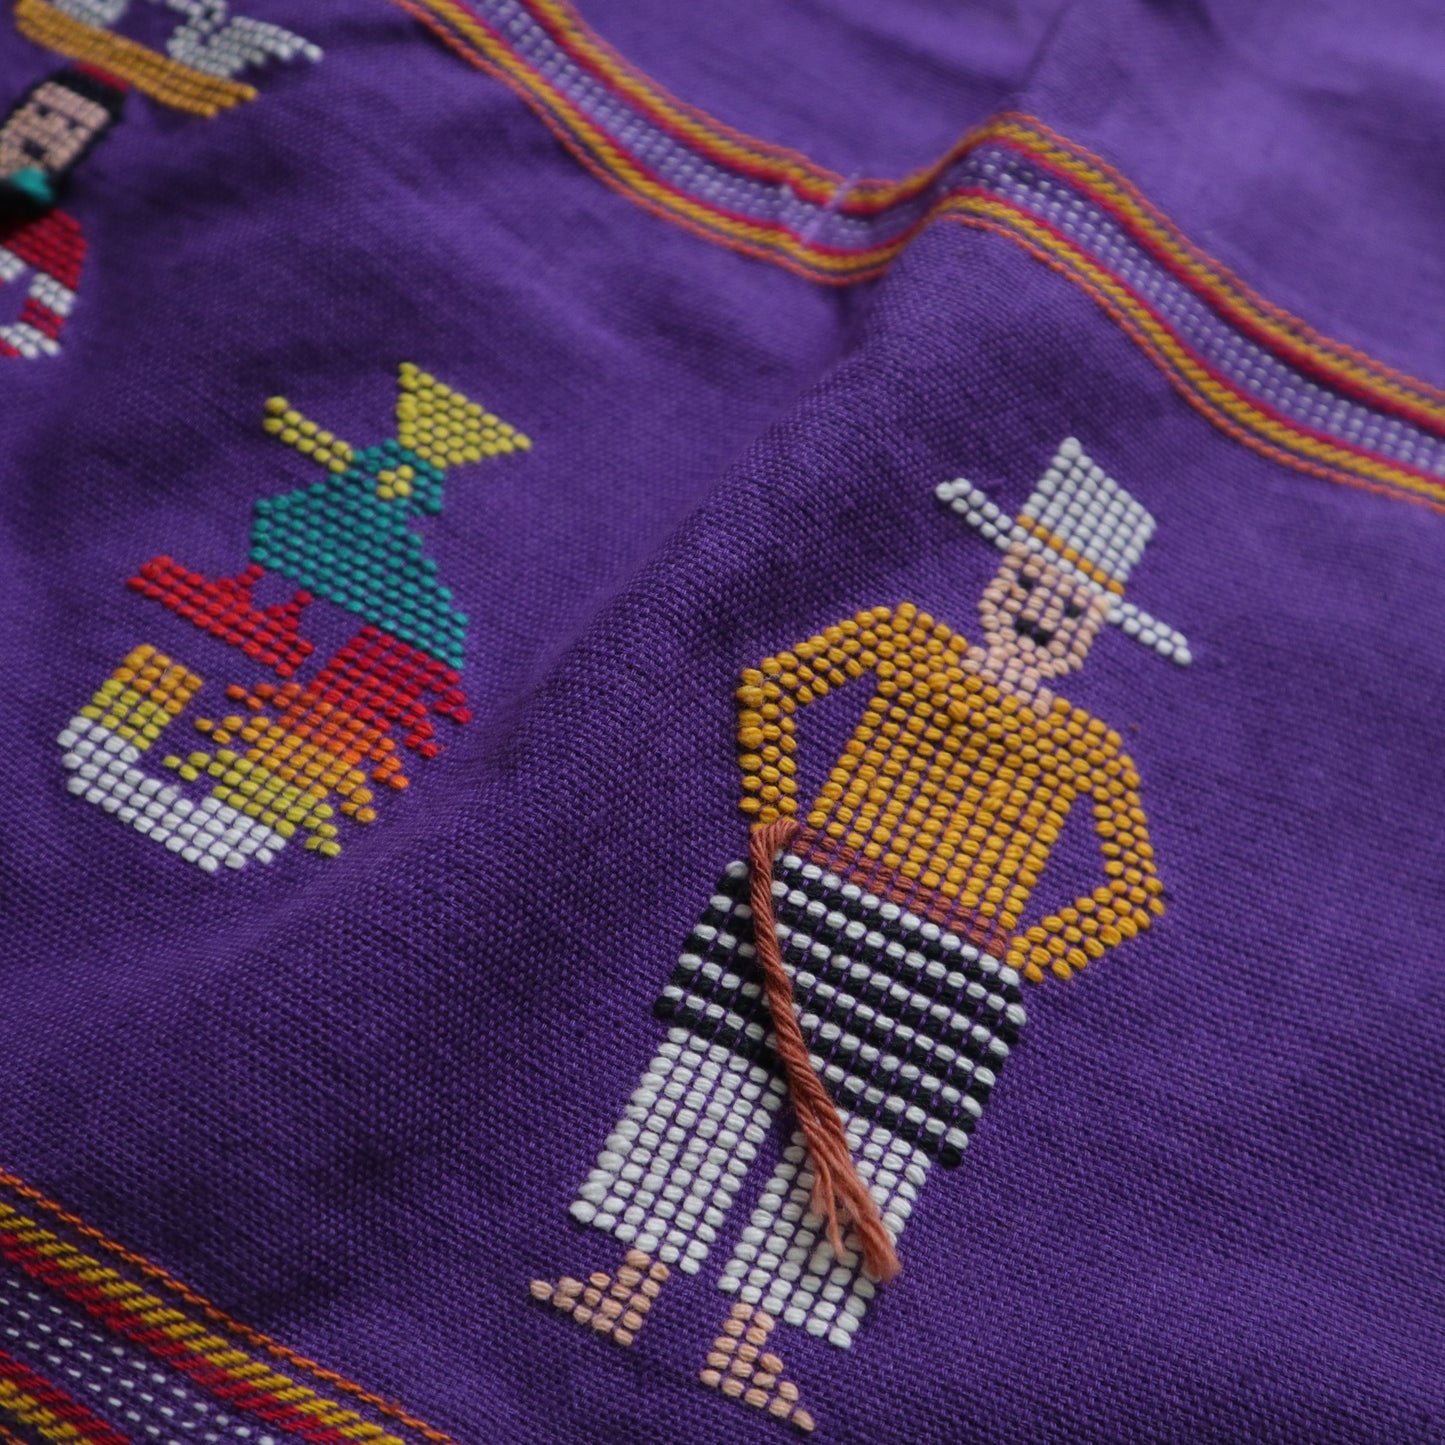 手作りグアテマラ エプロン パープル グアテマラ手作り刺繍エプロン 伝統的な農民刺繍